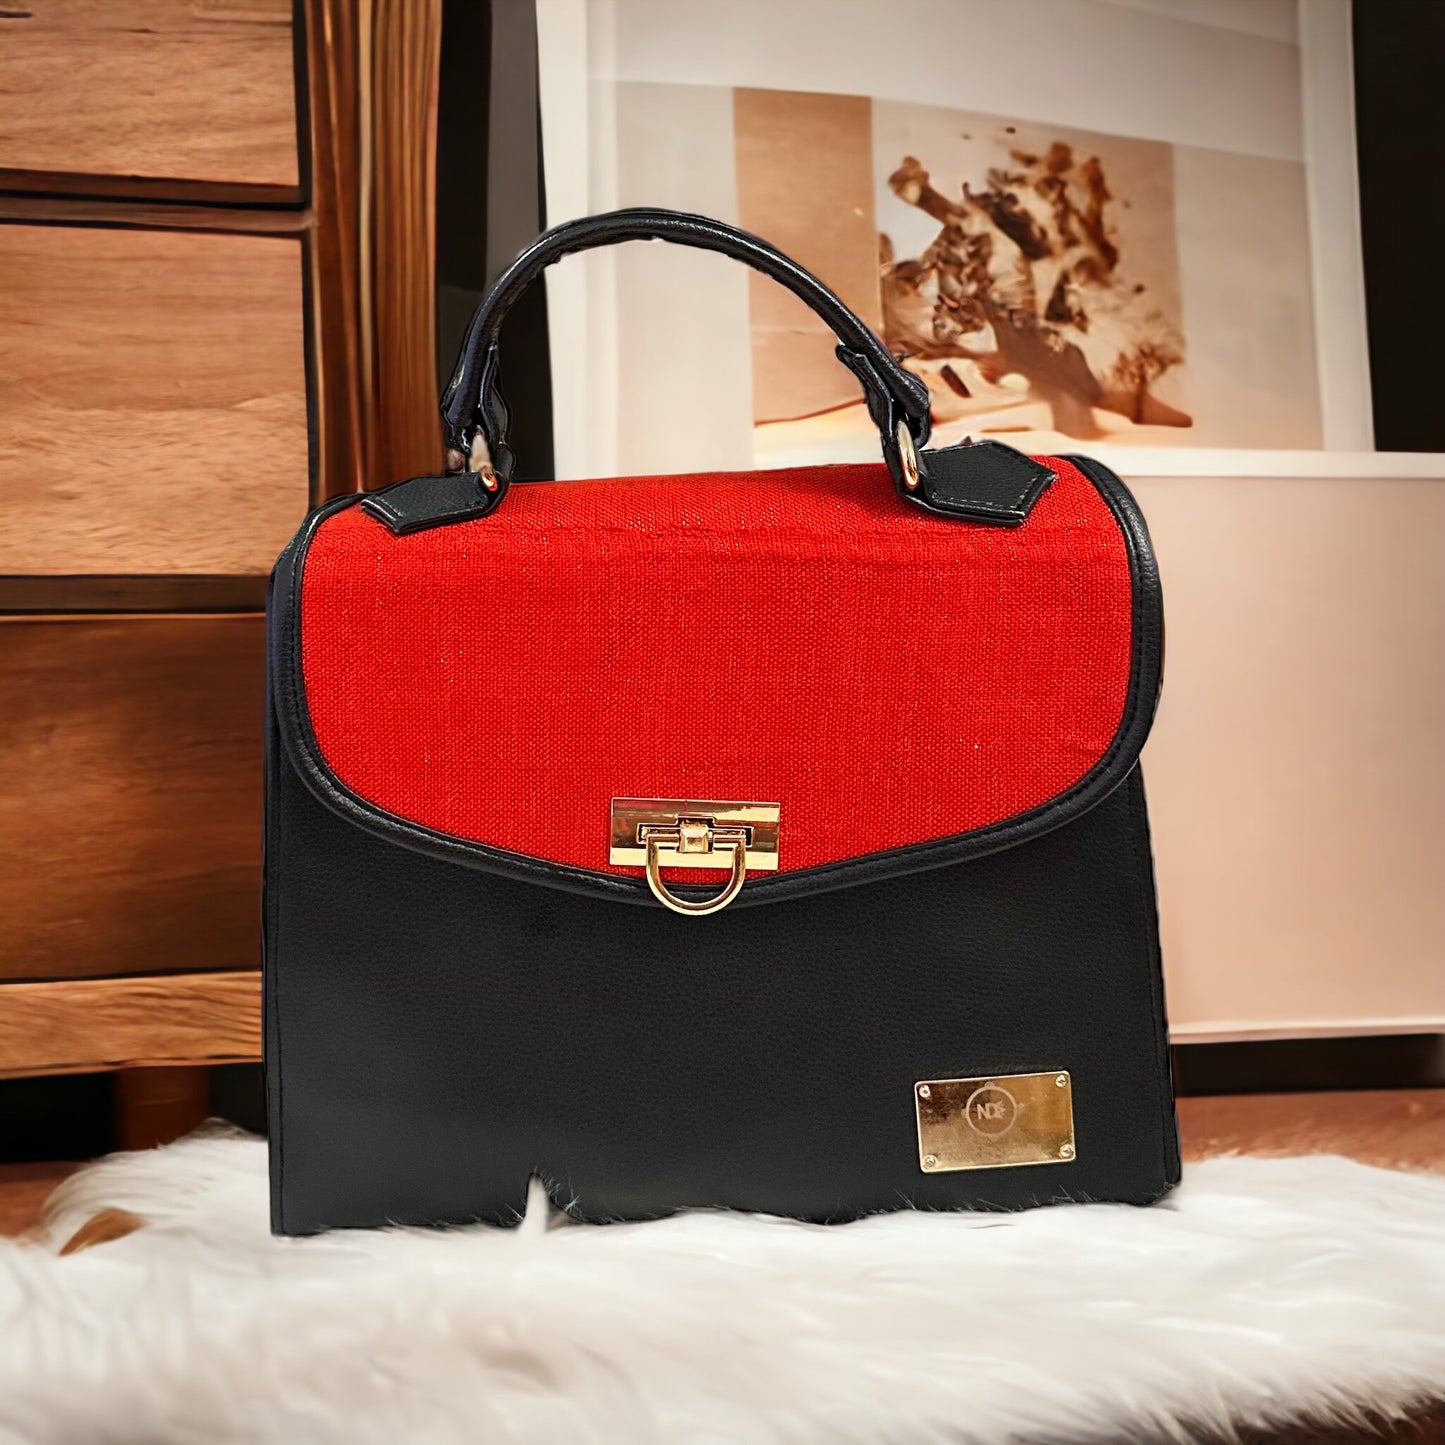 Alexia Ankara handbag/ luxury handbag/ sac à main Africain de luxe